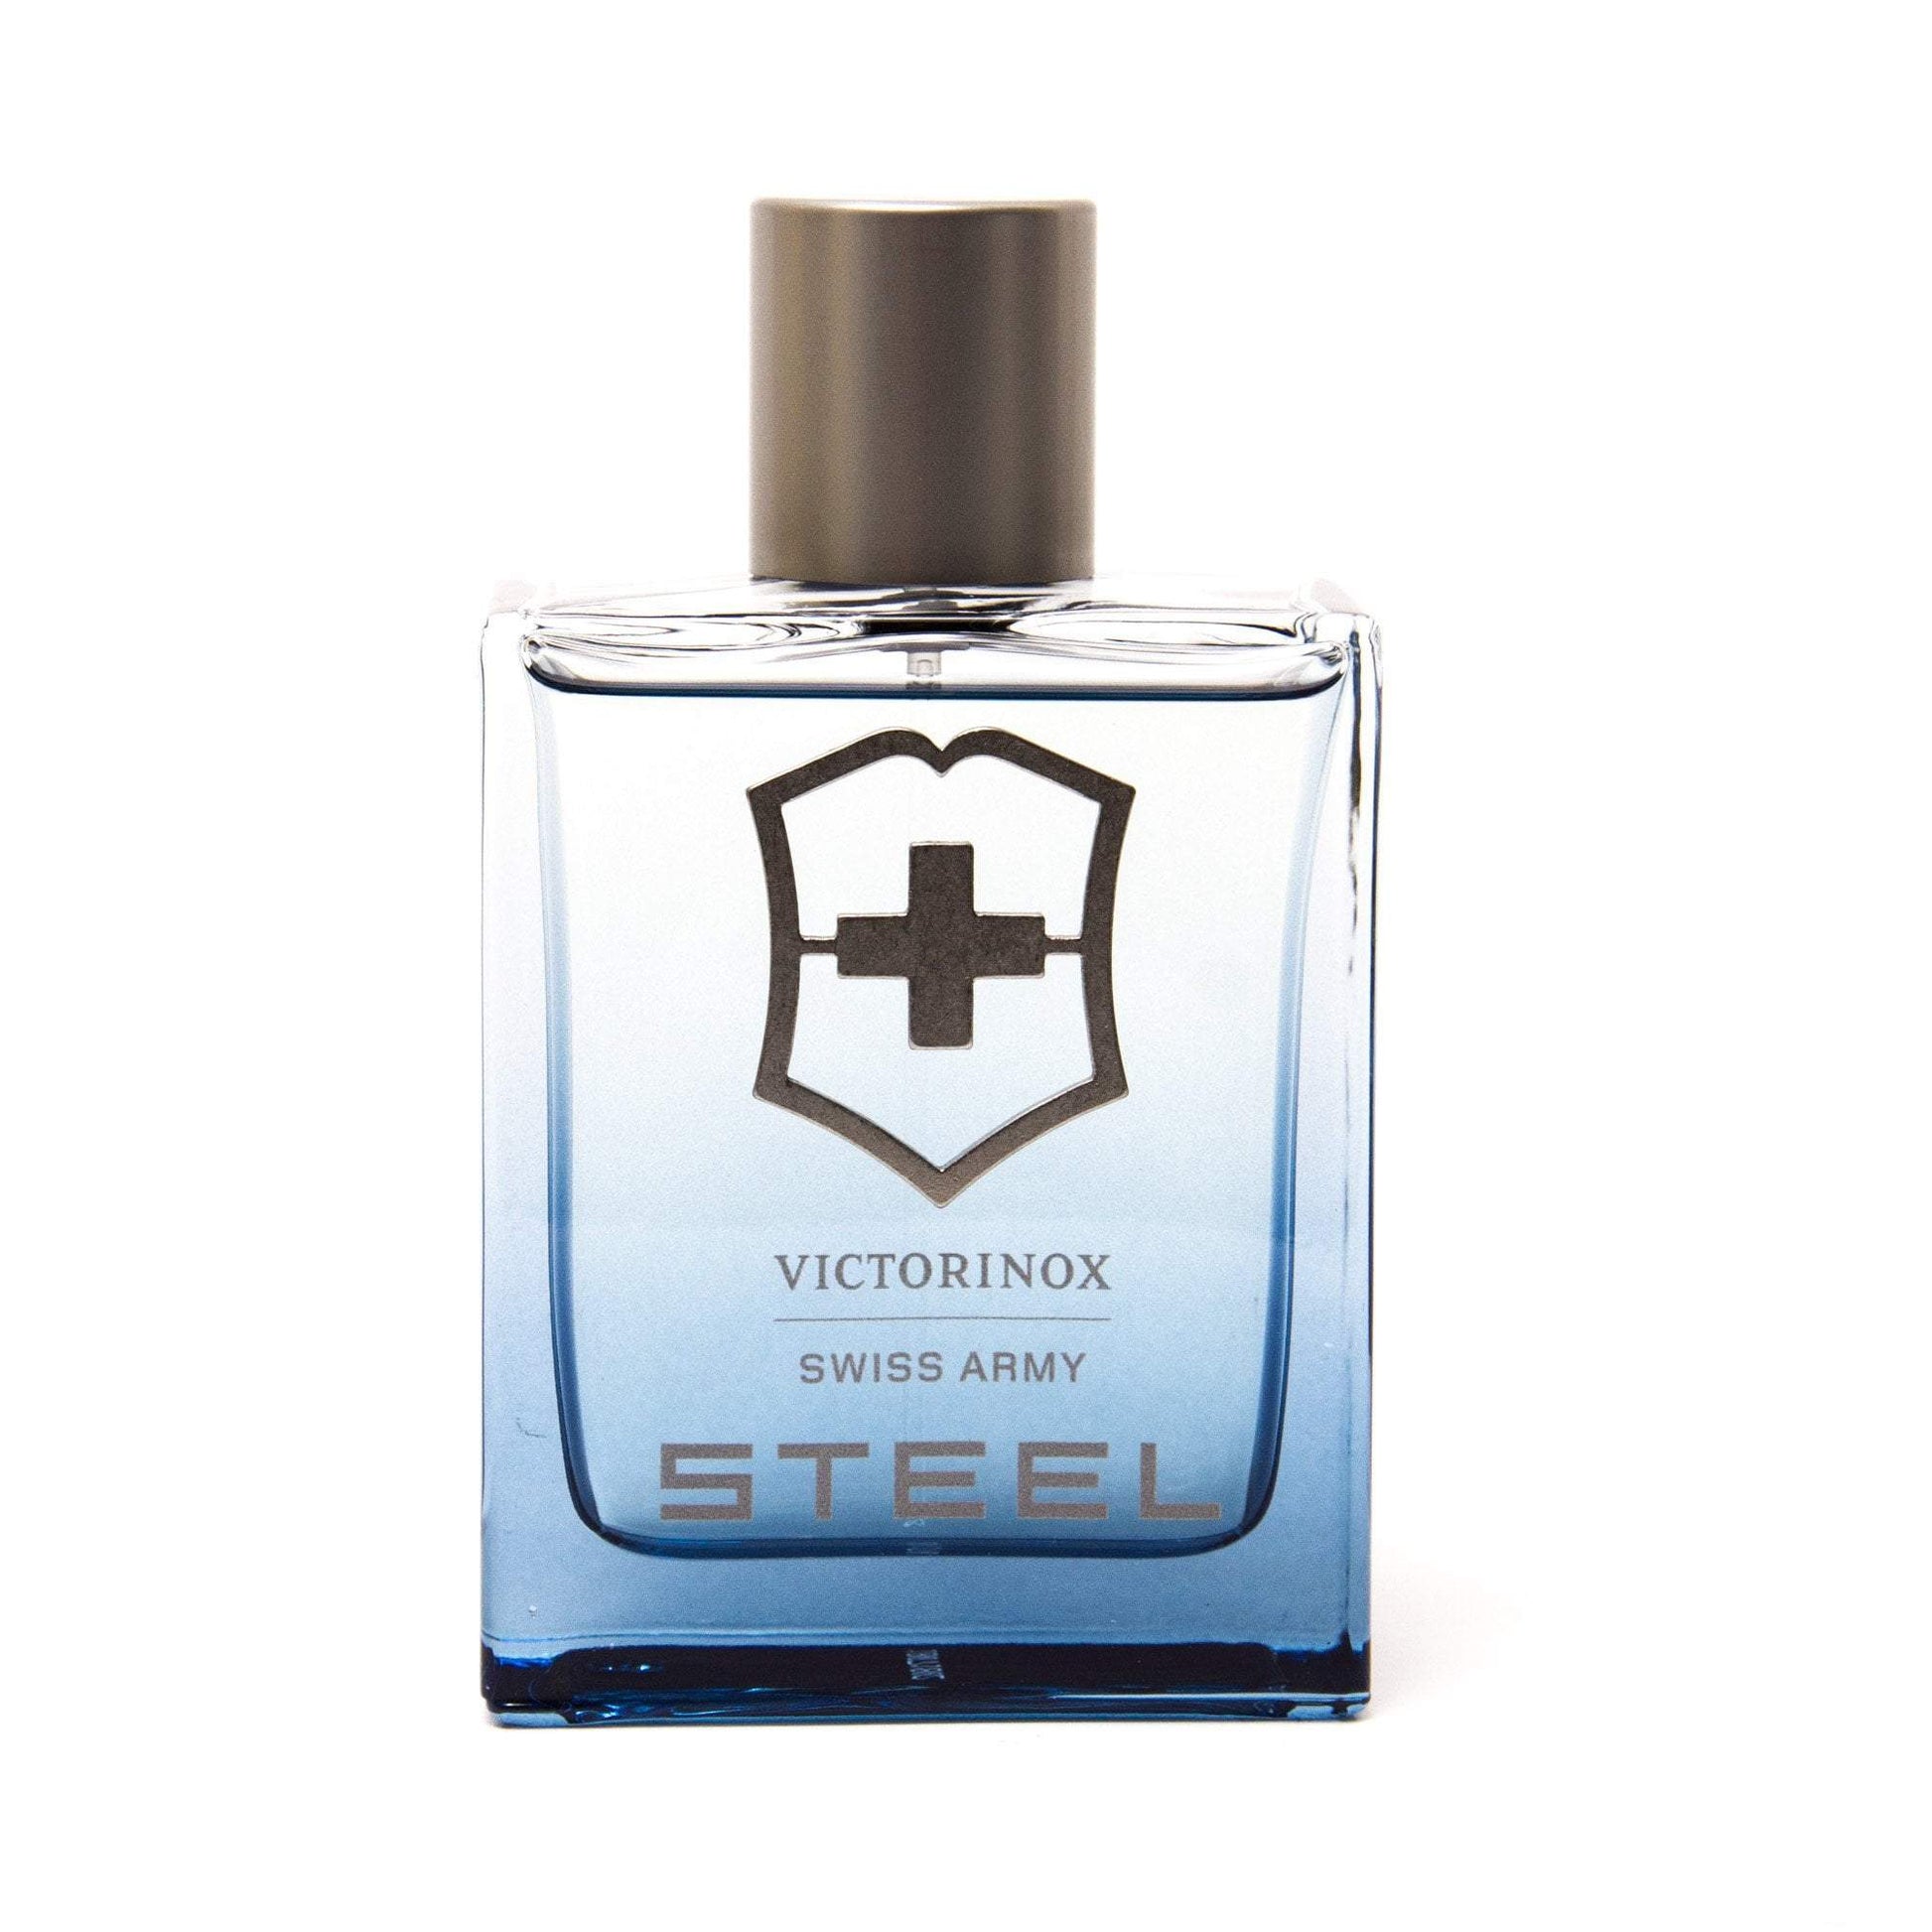 Steel Swiss Army Eau de Toilette Spray for Men by Victorinox Click to open in modal